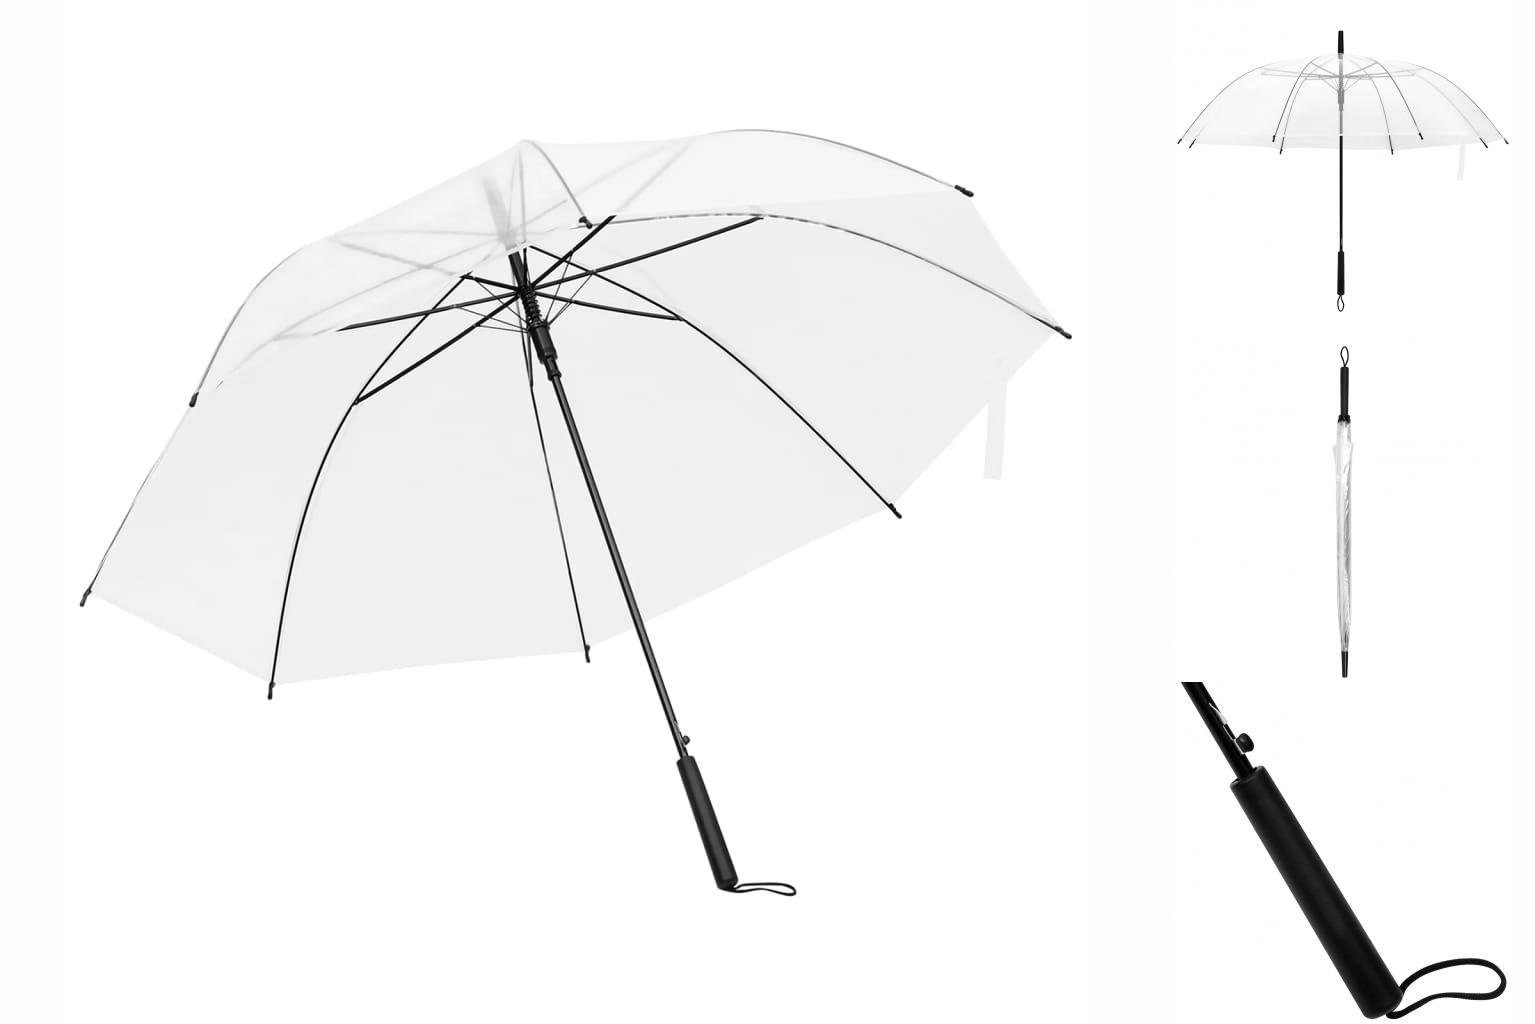 Taschenregenschirm Regenschirm cm 107 Transparent vidaXL